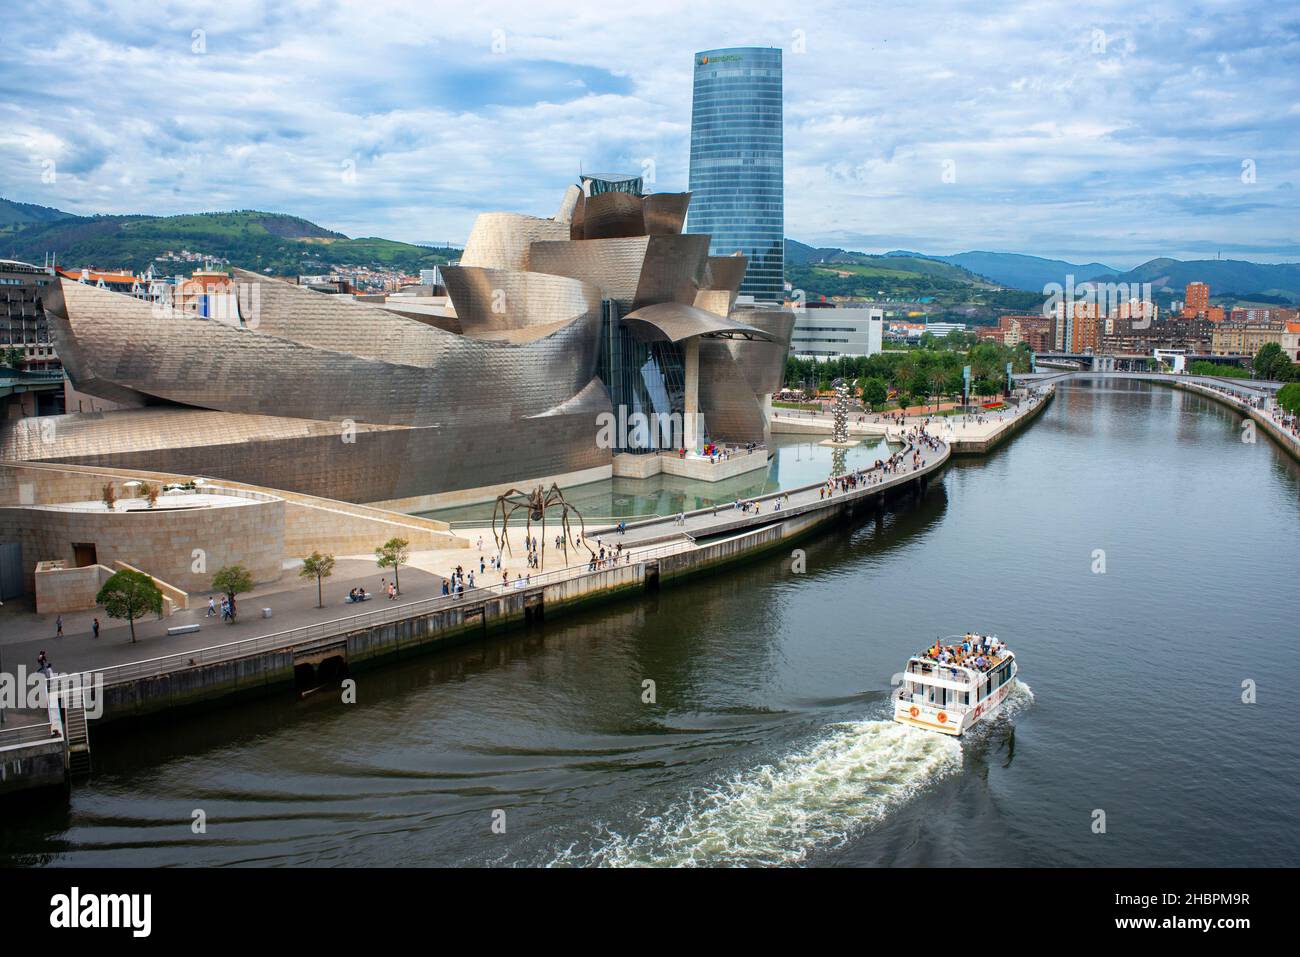 Spanien Reise Stadt, Blick bei Sonnenuntergang auf das von Frank Gehry entworfene Guggenheim Museum im Zentrum von Bilbao, Nordspanien. Stockfoto